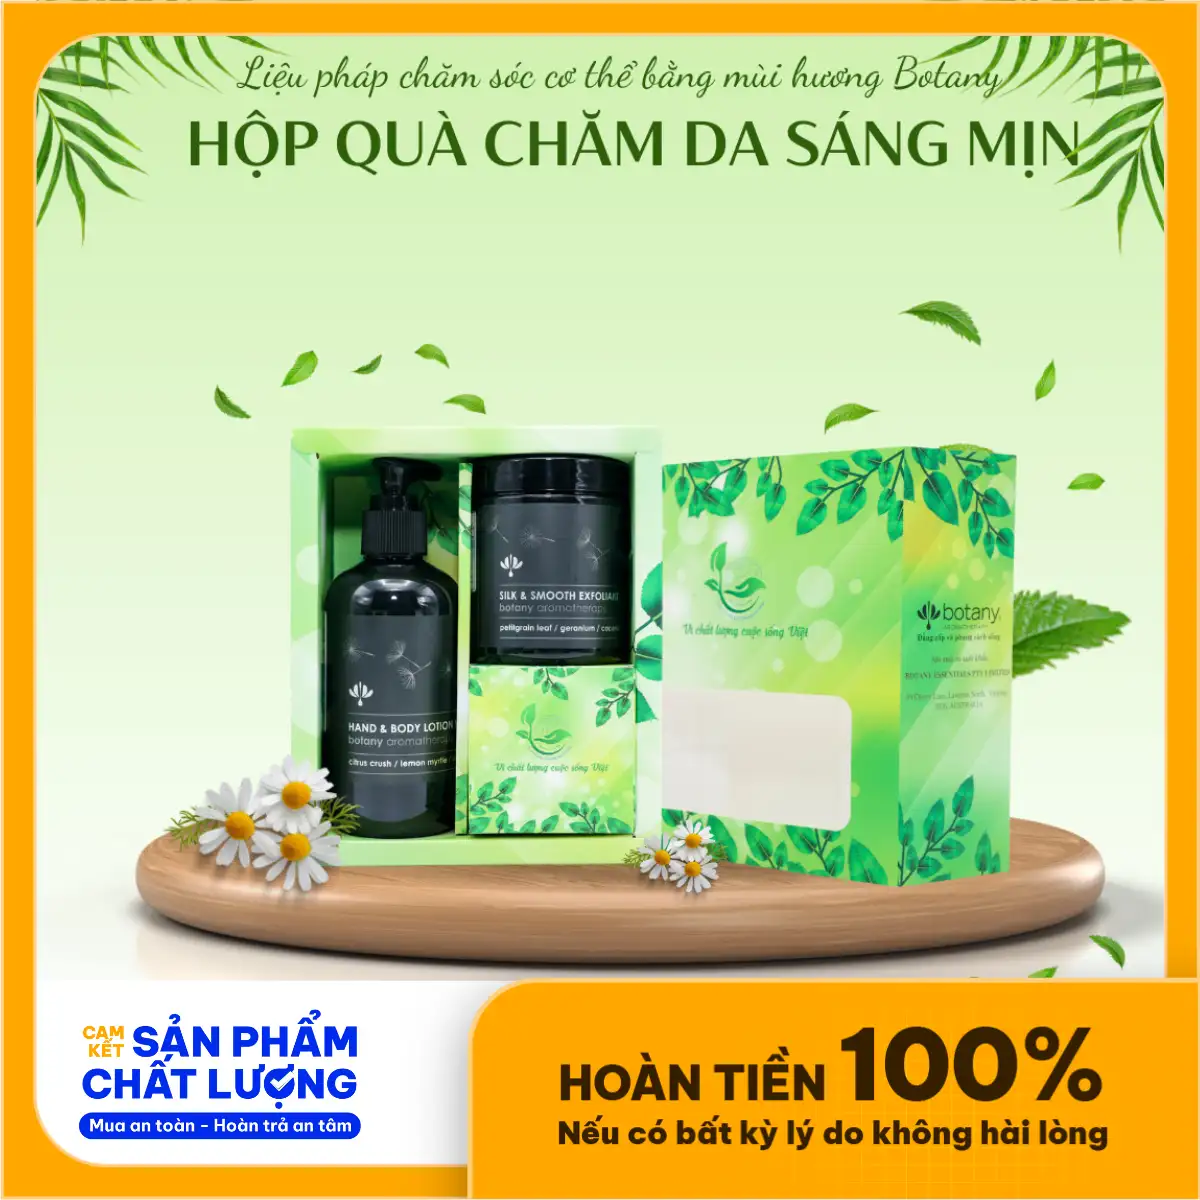 Hộp Quà Chăm Da Sáng Mịn Botany - Hh&c - Droppii Shops